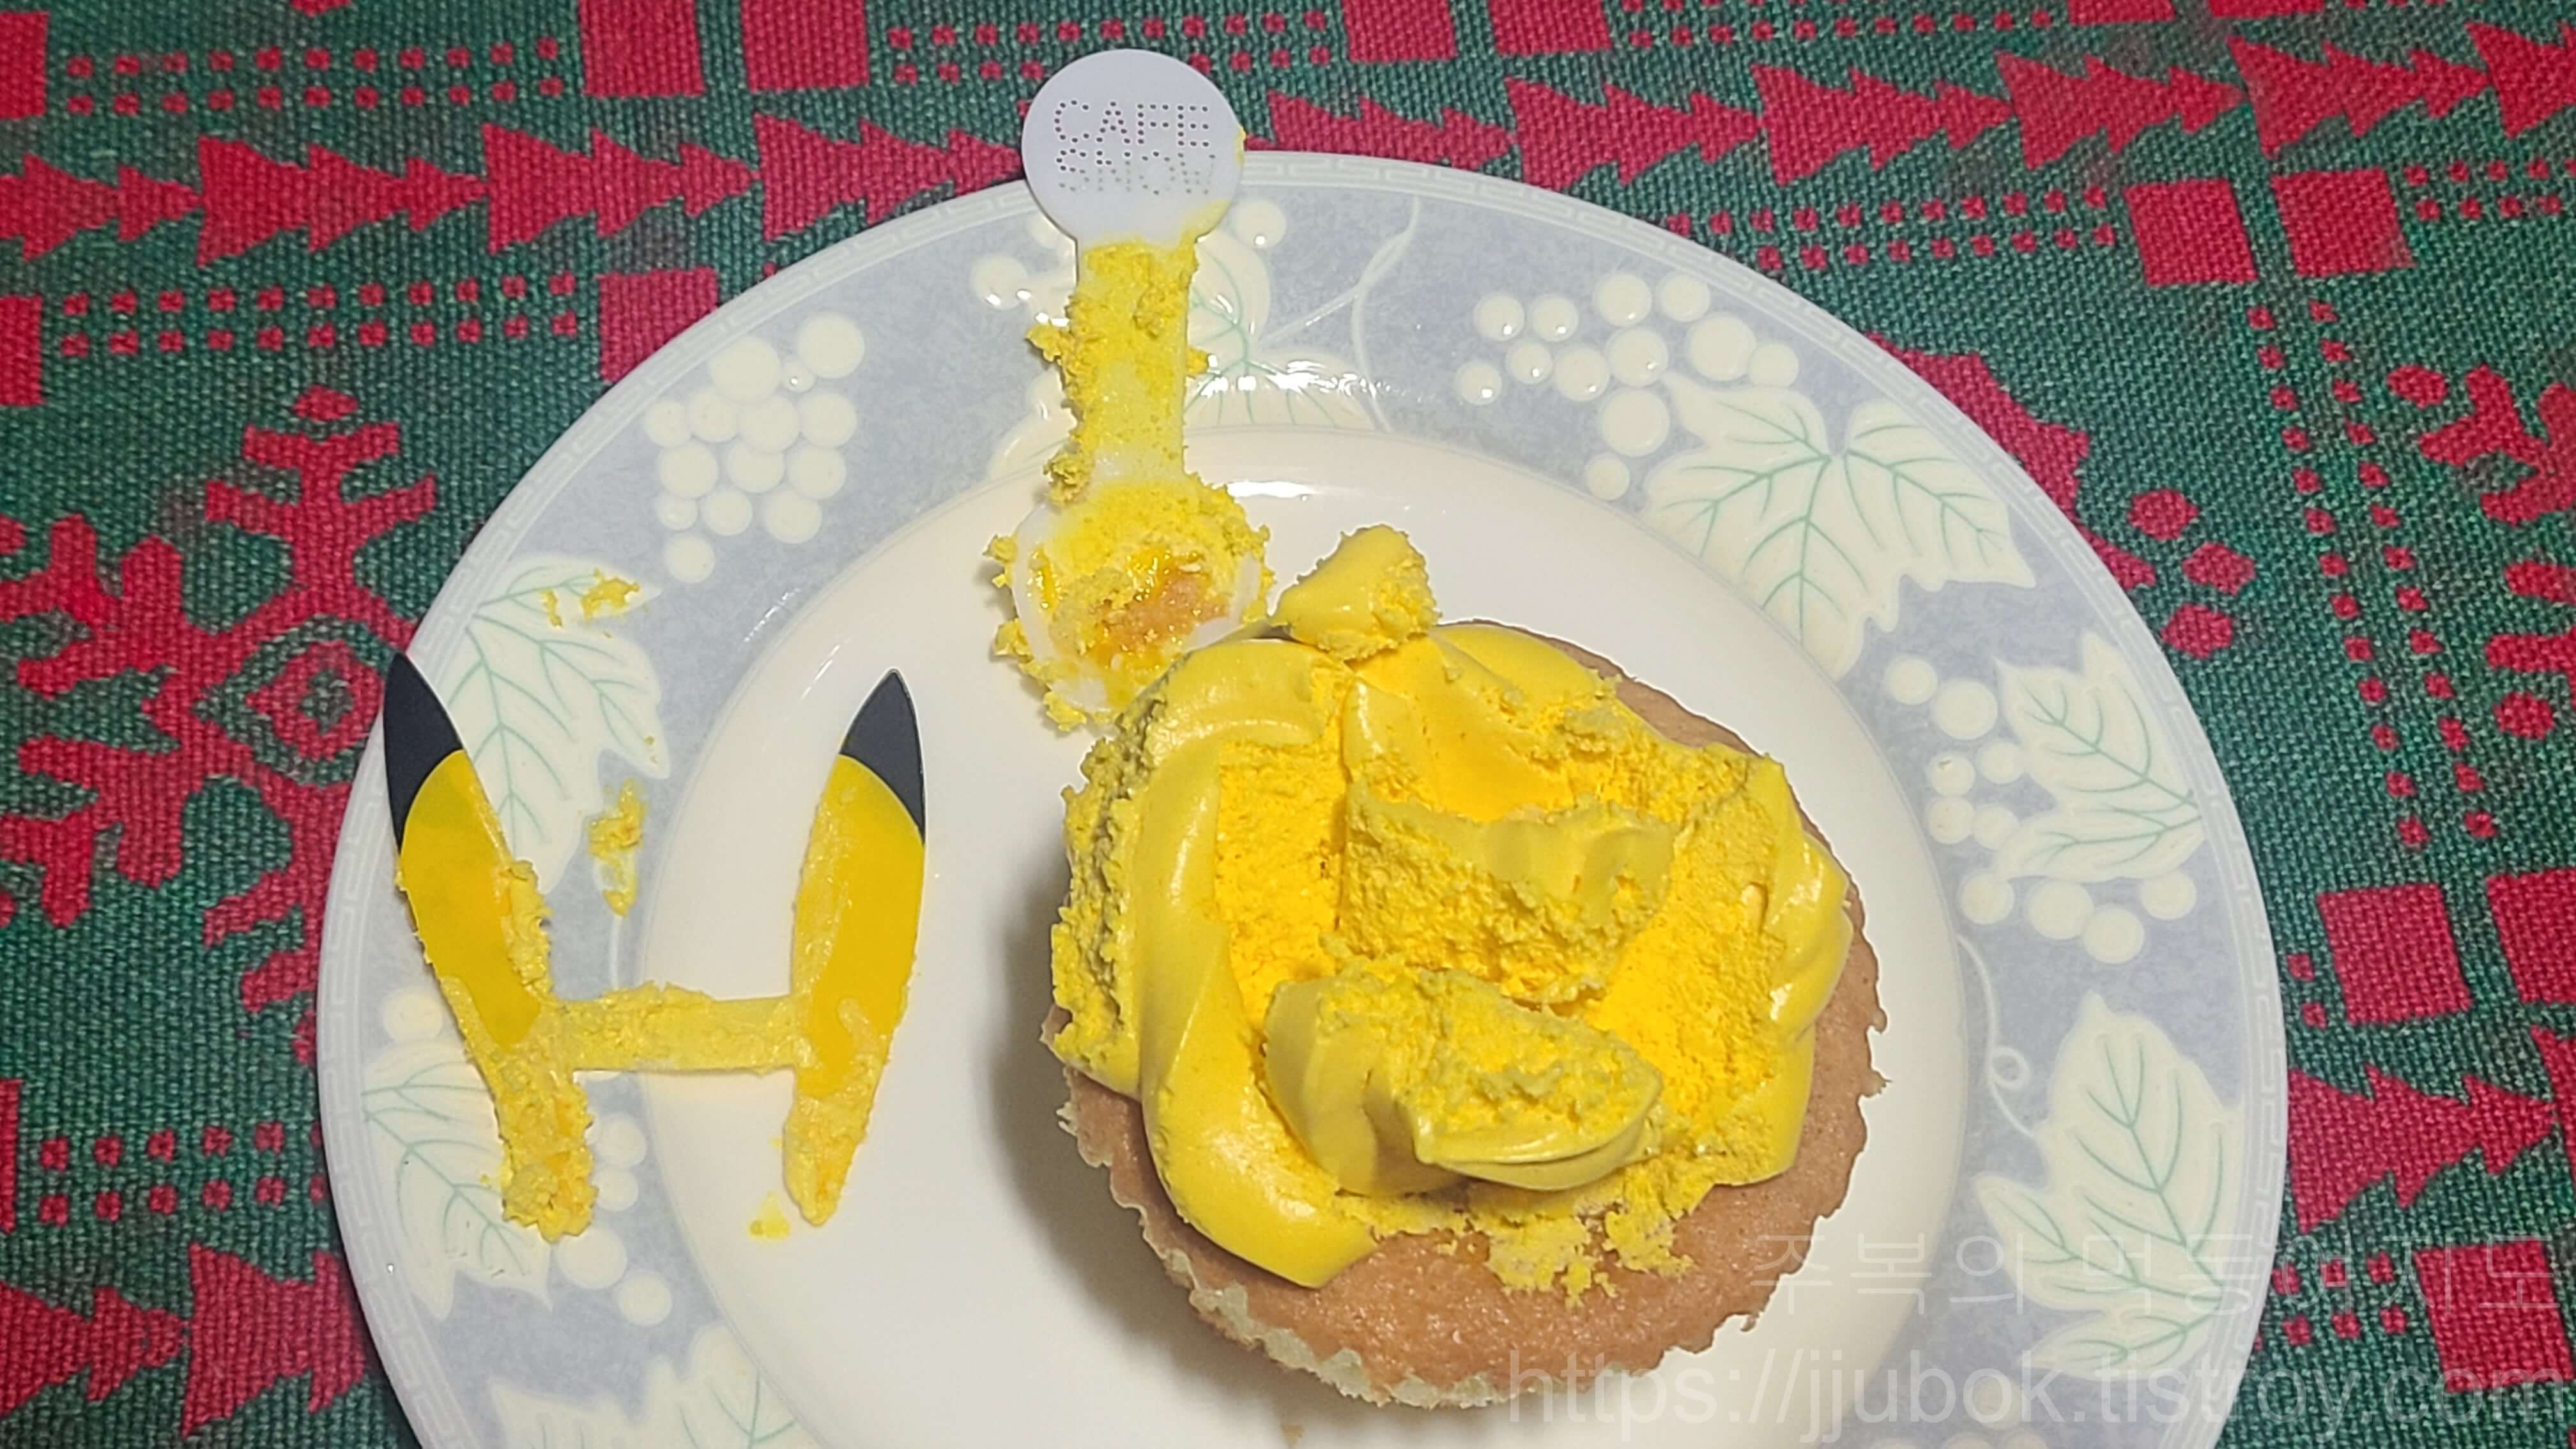 삼립-포켓몬빵-피카츄-망고컵케익-악세사리